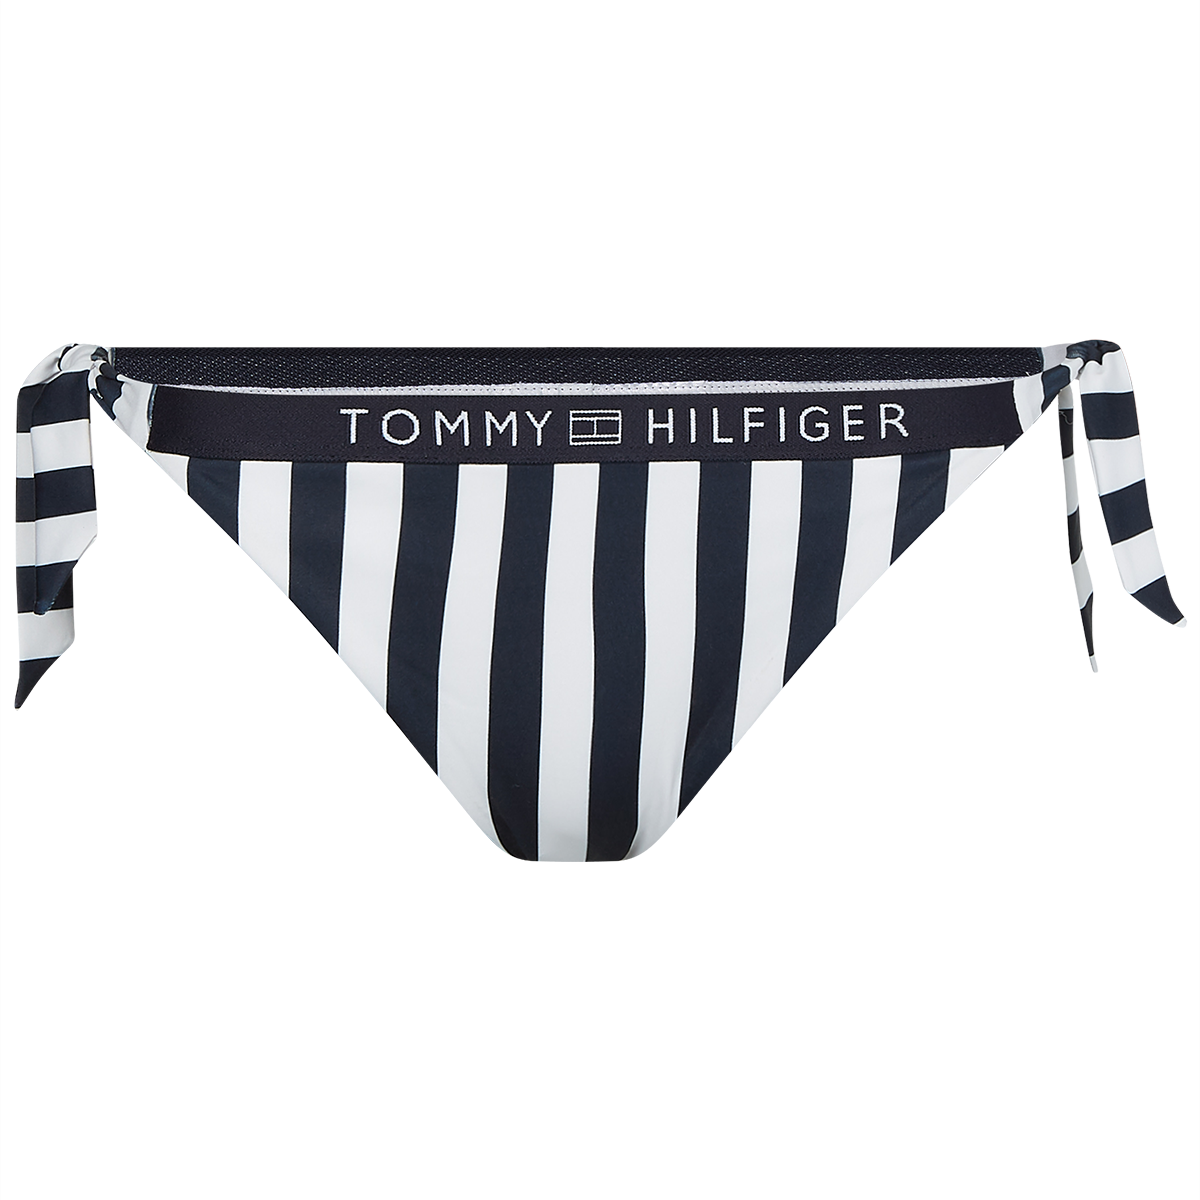 Tommy Hilfiger Lingeri Bikini Tai W U, Farve: Sort/Hvid, Størrelse: XS, Dame Sommertoj.dk